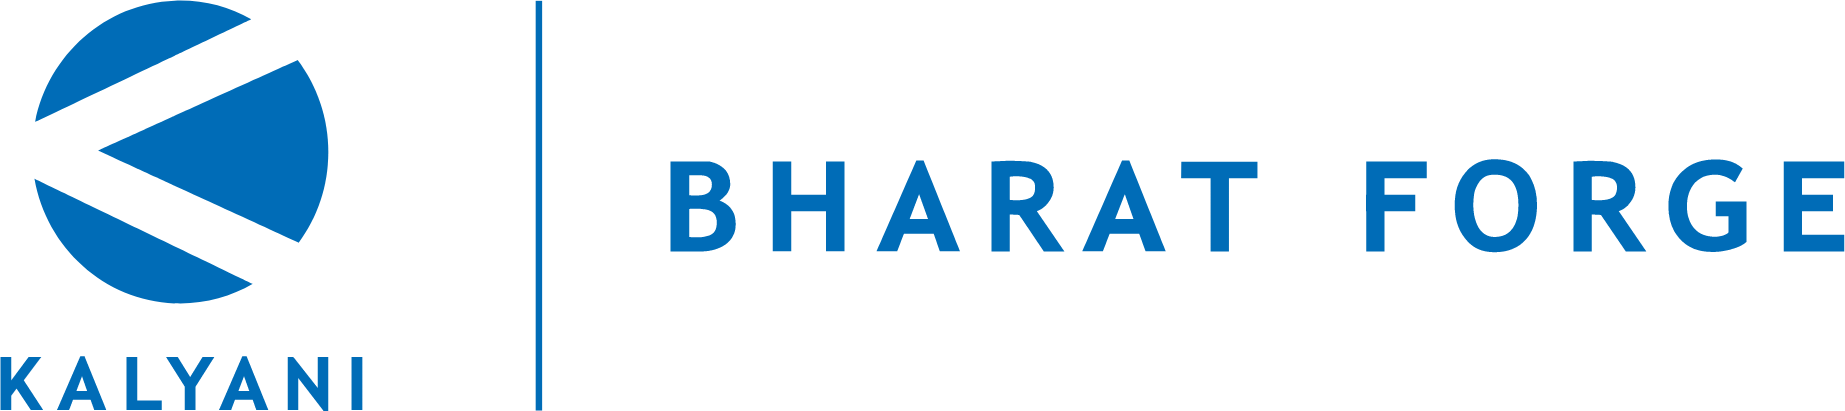 Bharat Forge
 logo large (transparent PNG)